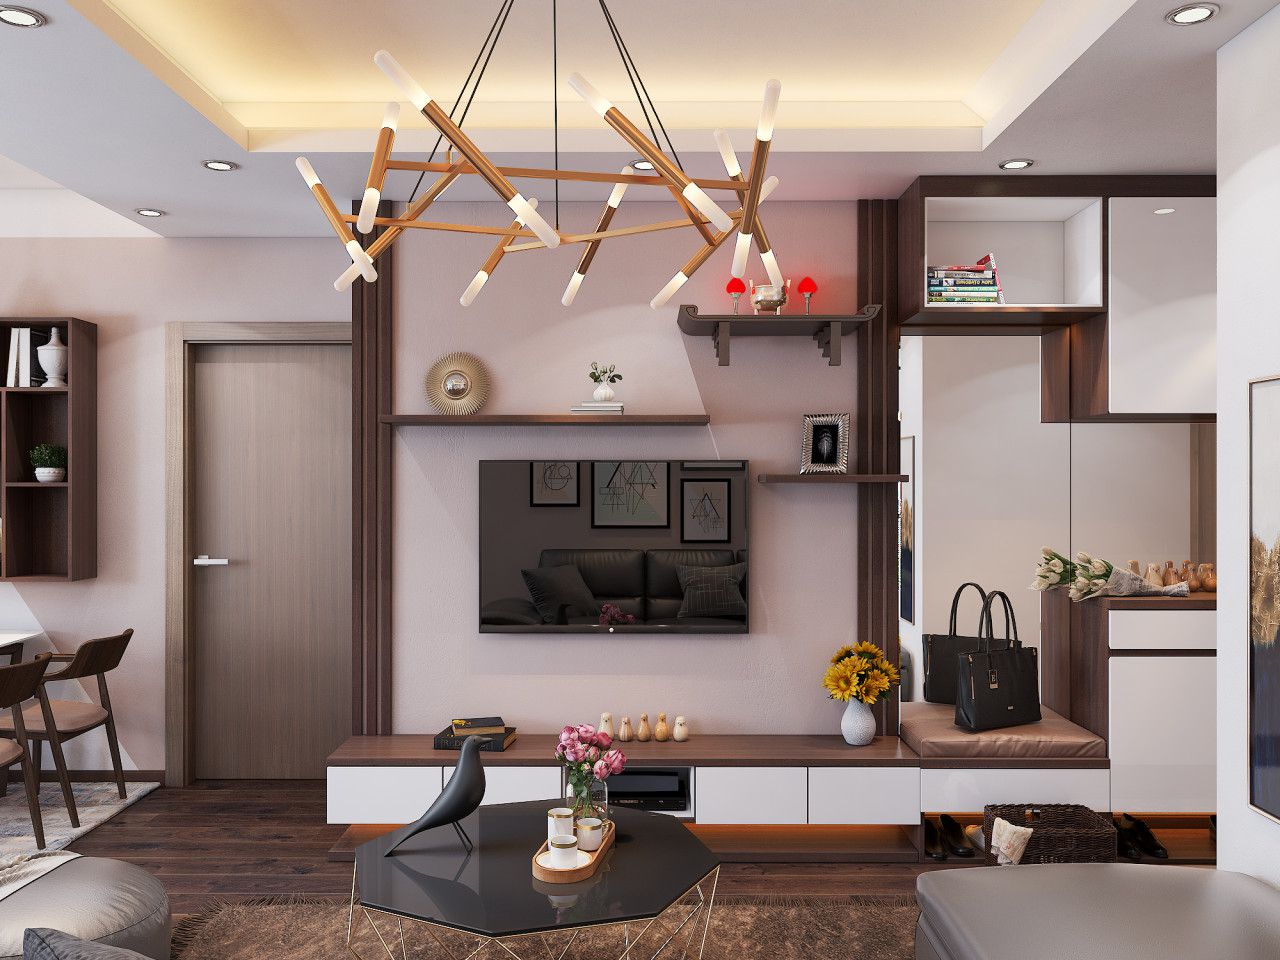 Kinh nghiệm thiết kế nội thất chung cư giá rẻ - OfficeHome Funi